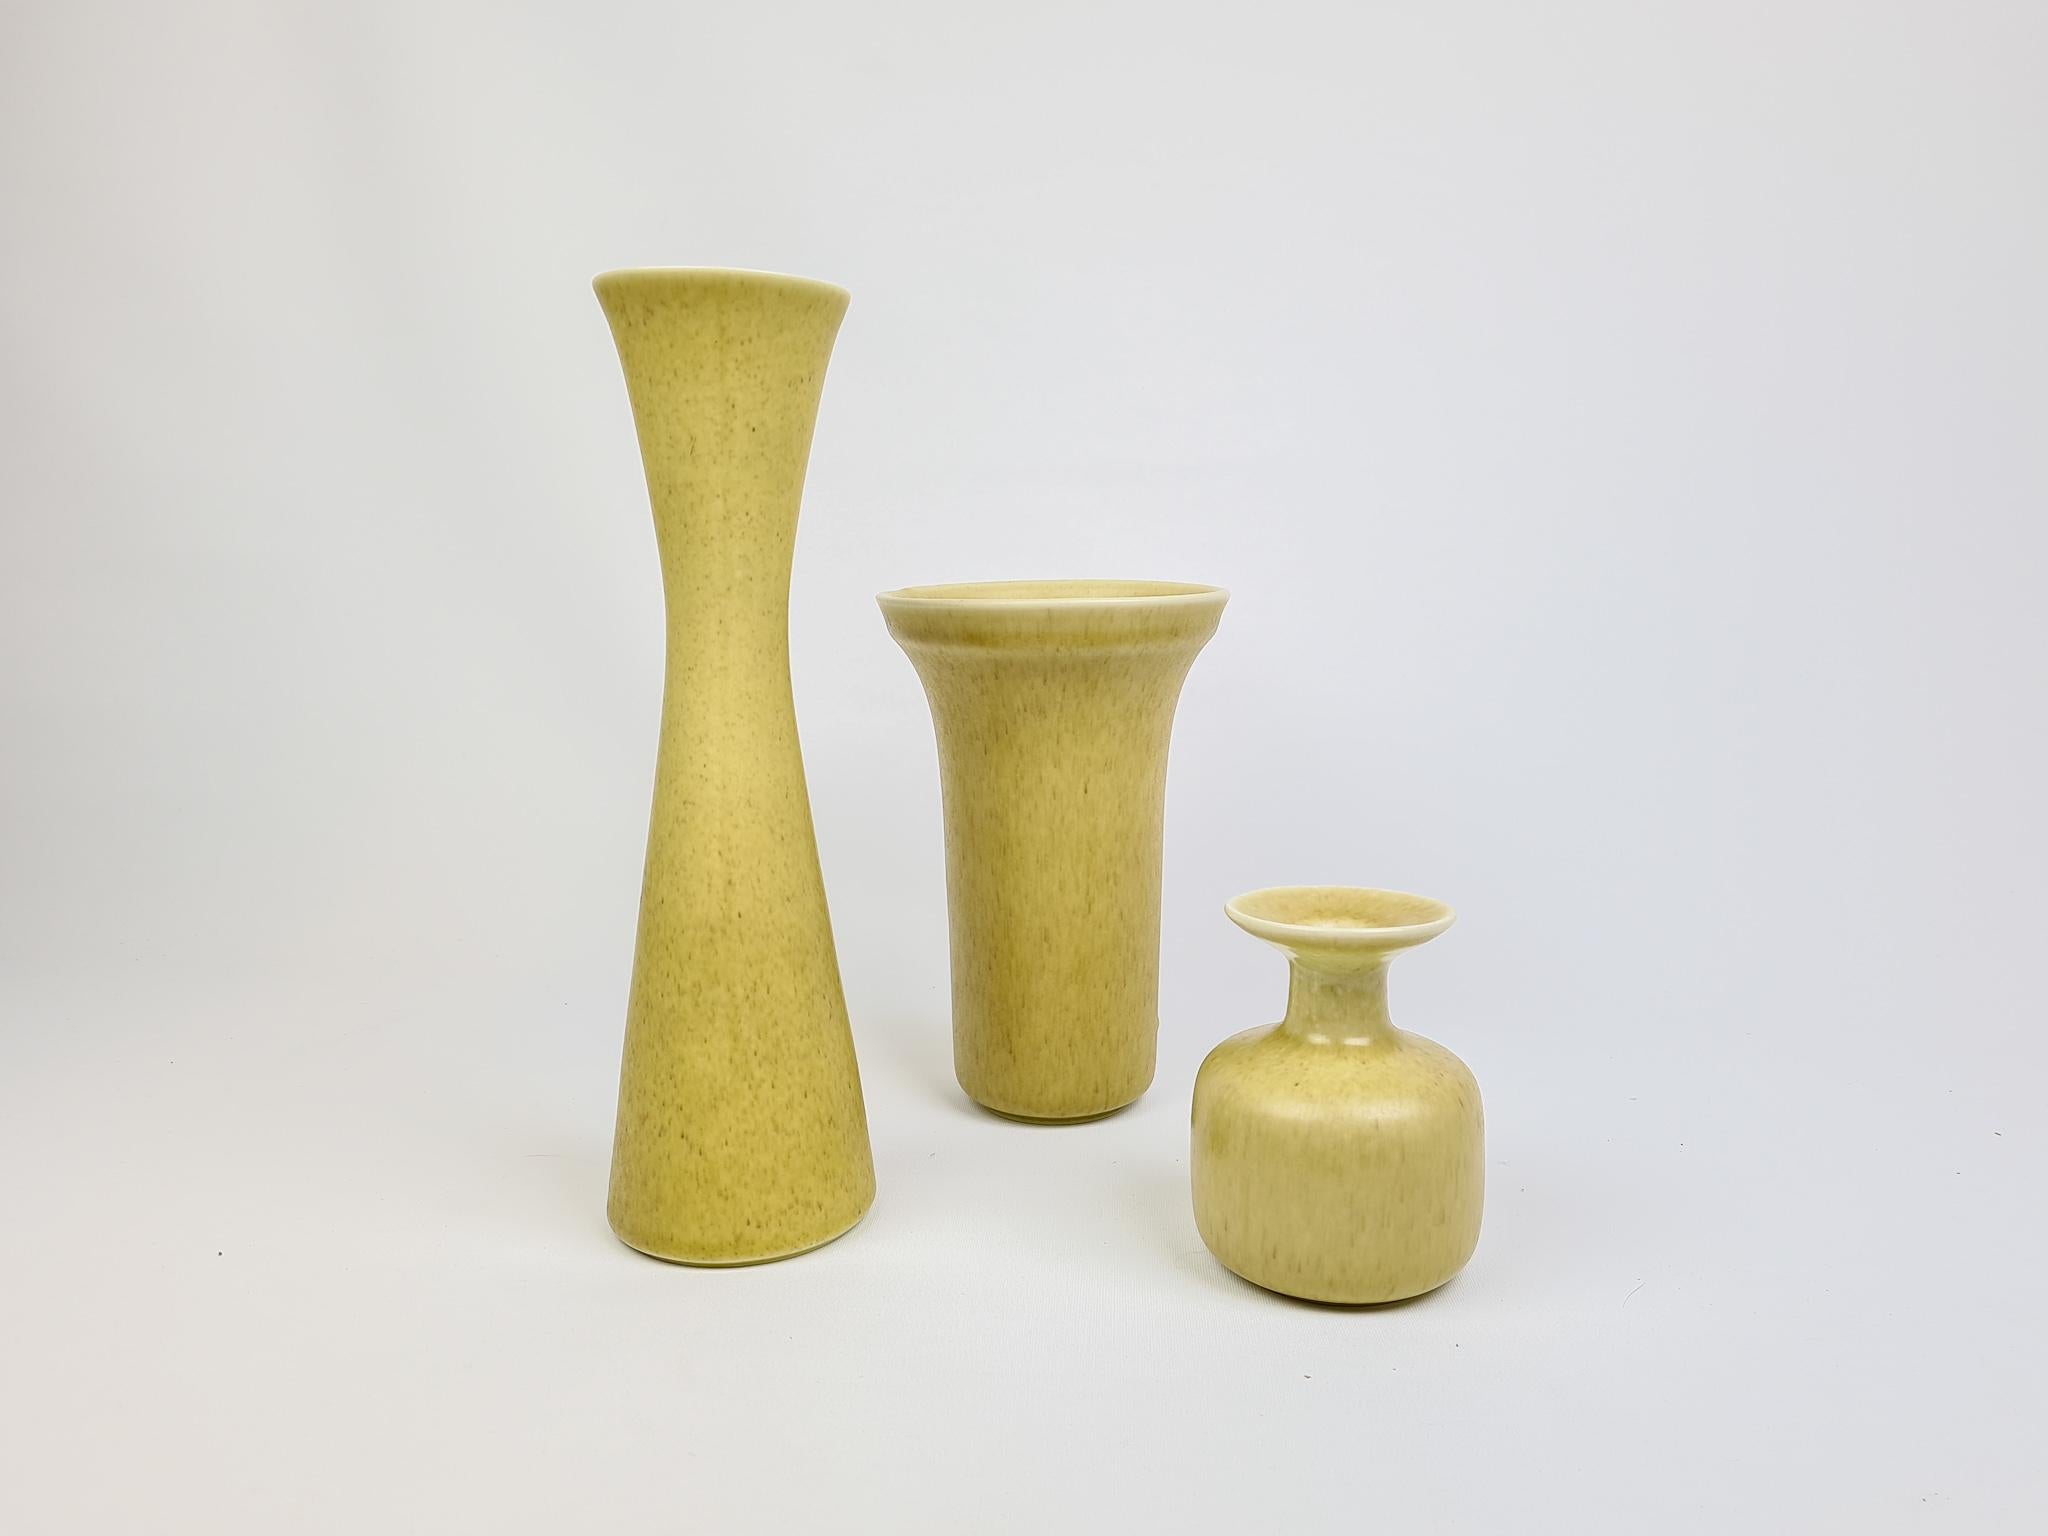 Trois magnifiques vases de Rörstrand et du fabricant ou designer Gunnar Nylund. Fabriqué en Suède au milieu du siècle dernier. Magnifiques vases émaillés en bon état.

Mesures : Hauteur 26 cm, 17 cm et 10 cm.